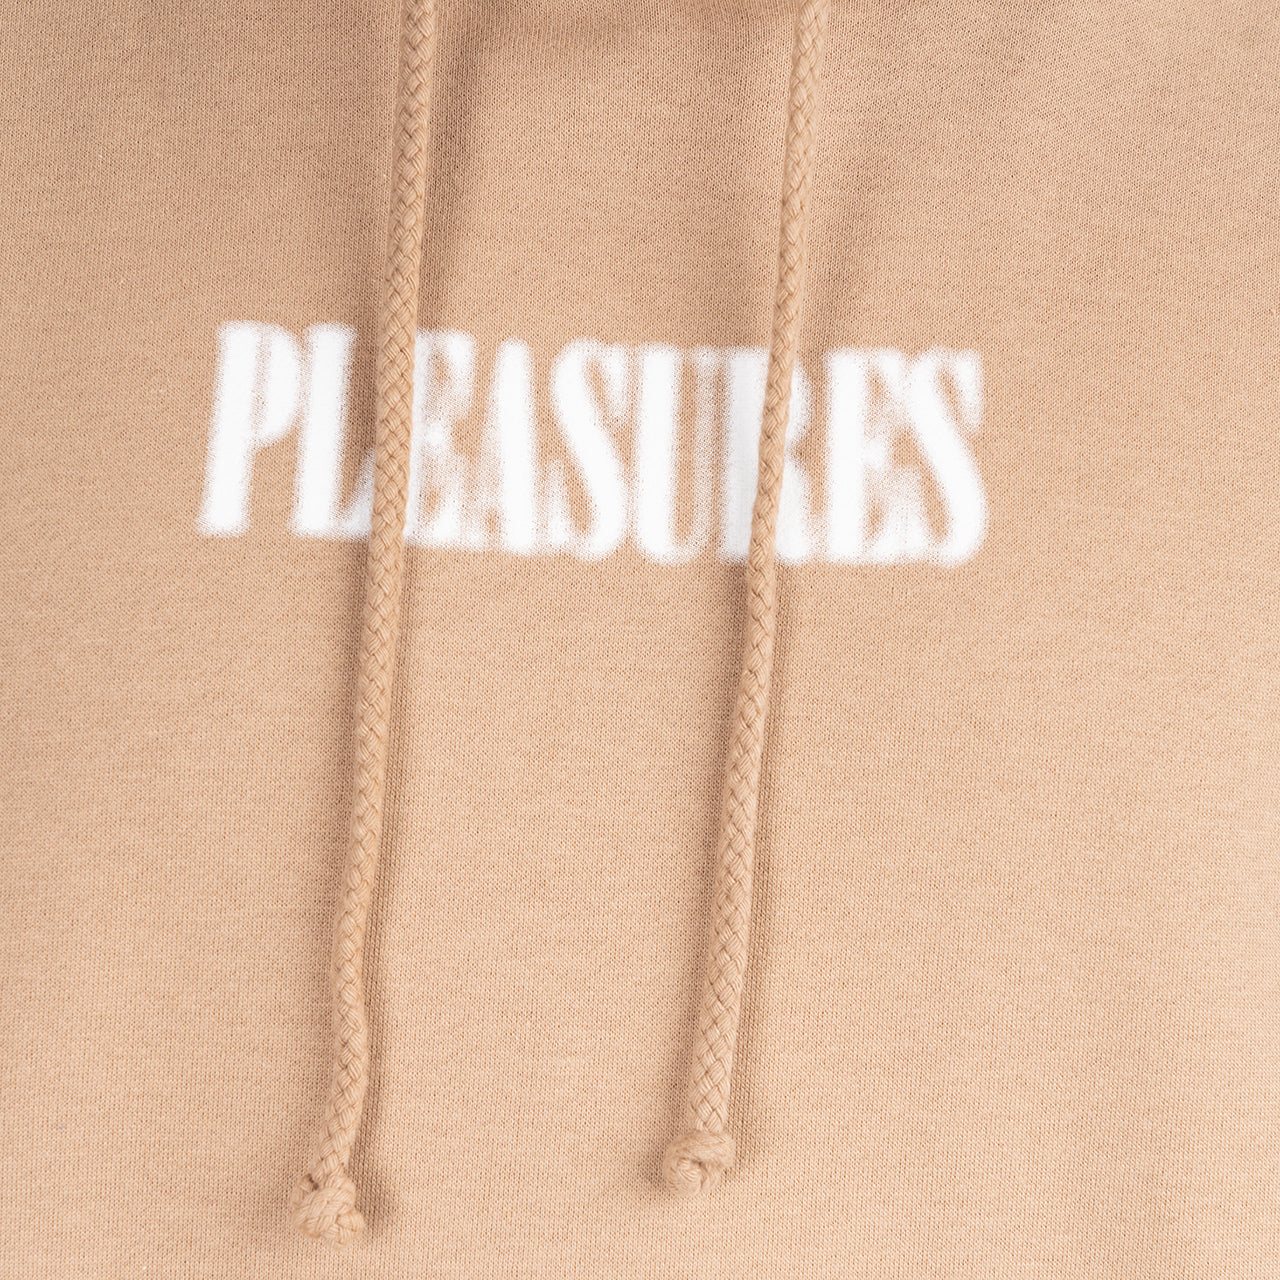 Pleasures Blurry Hoodie (Braun)  - Allike Store